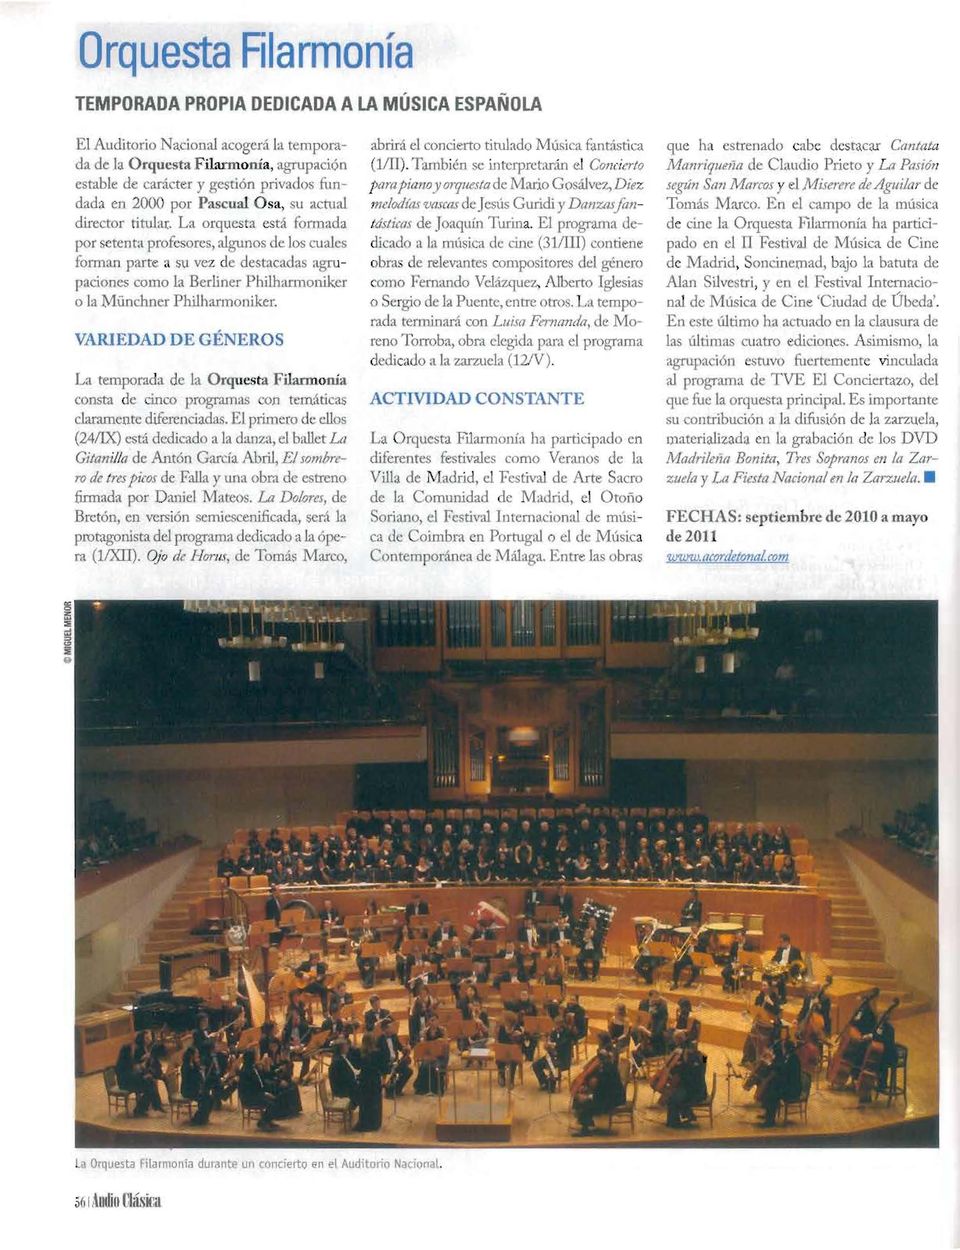 La orquesta está formada por setenta profesores, algunos de los cuales forman parte a su vez de destacadas agrupaciones como 11 Berliner Philharmoniker o la M ünchner Philhannoniker.